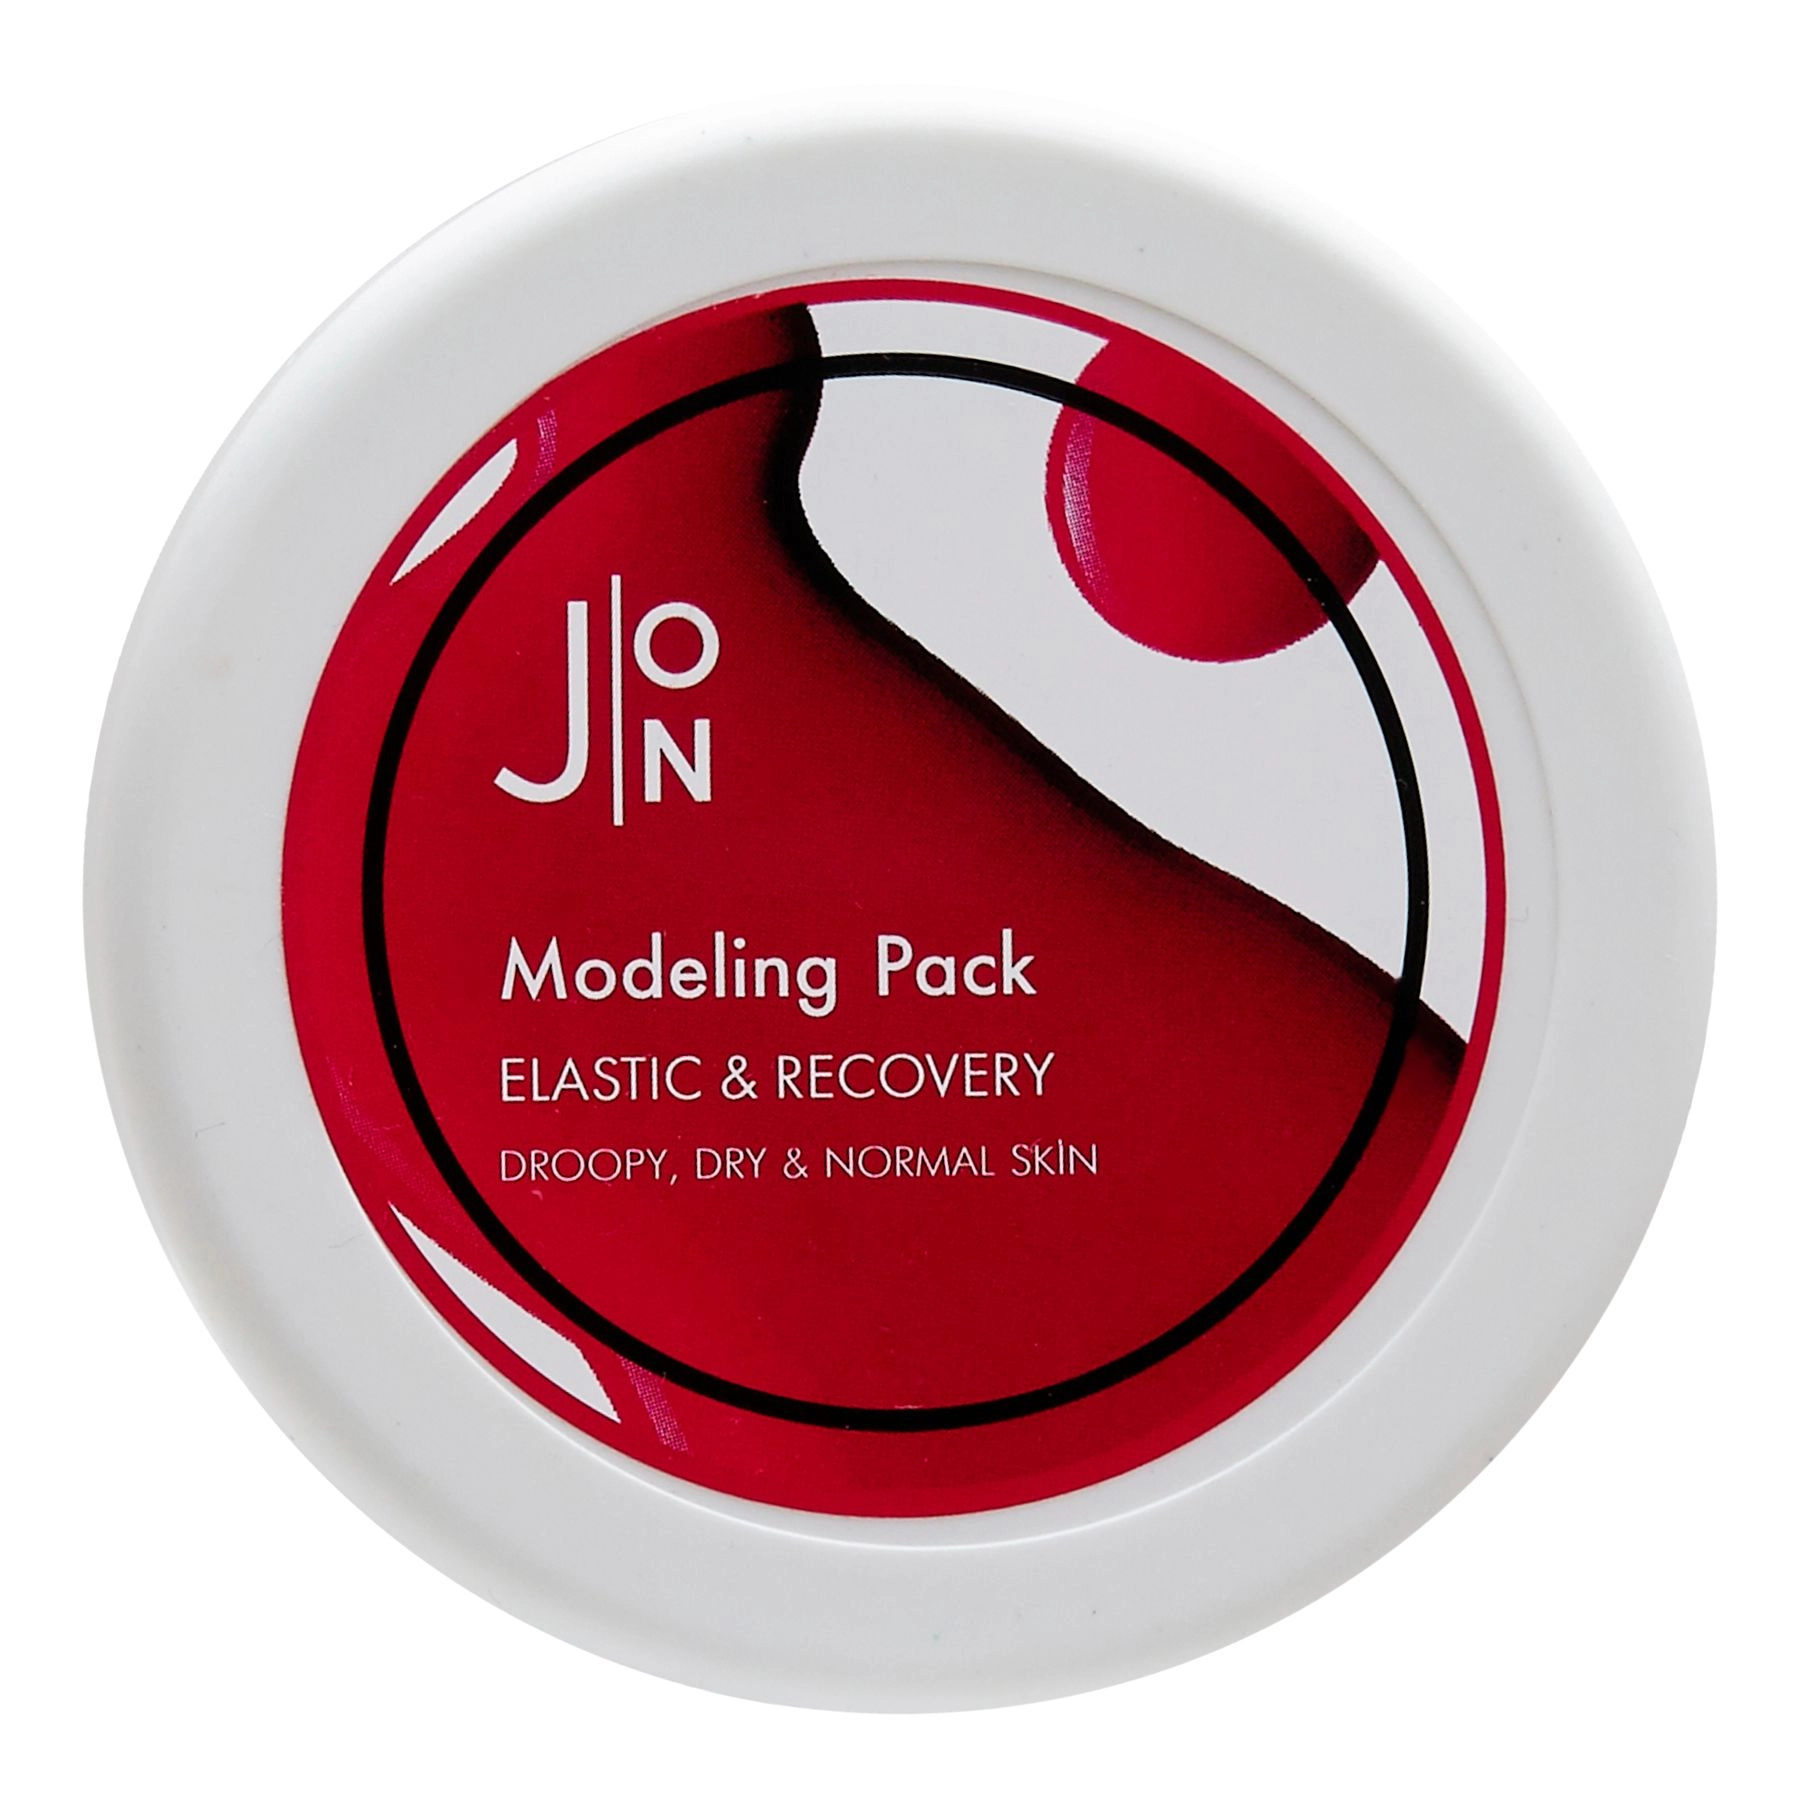 Альгинатная маска для повышения эластичности и восстановления кожи лица - J:ON Modeling Pack Elastic & Recovery, 18 г - фото N1